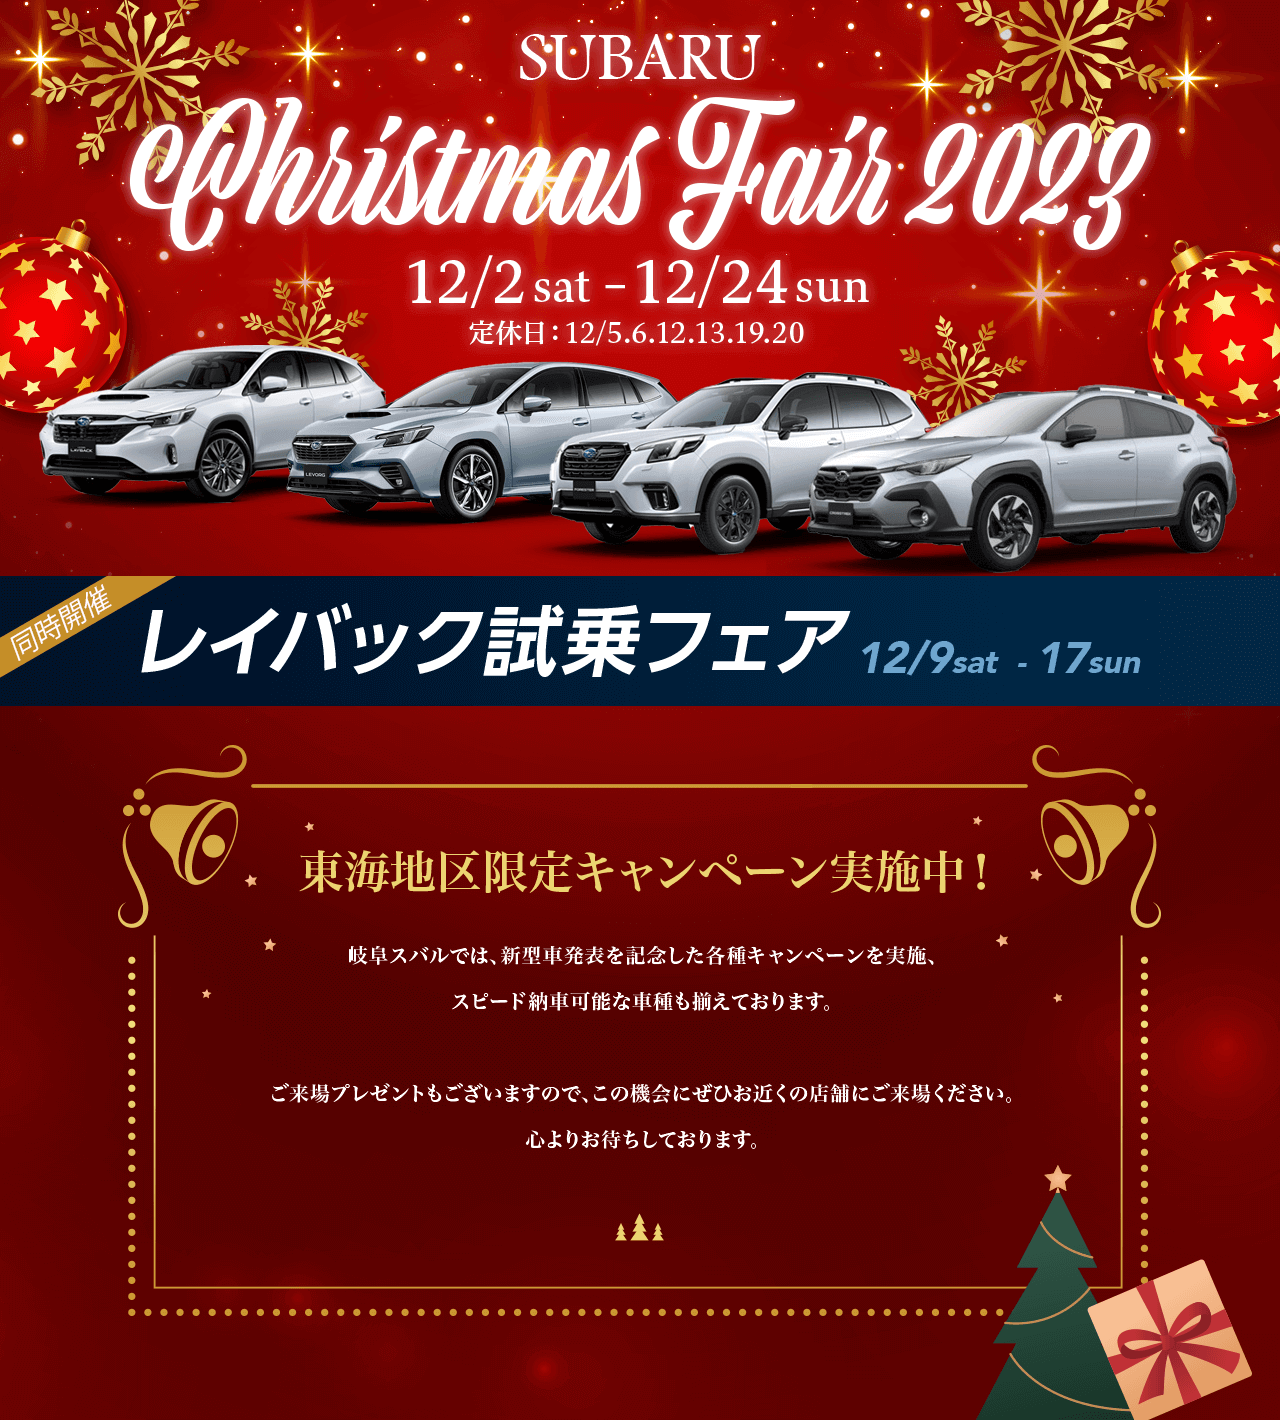 SUBARU Christmas Fair 2023.12/2 sat–12/24 sun 定休日：12/5.6.12.13.19.20東海地区限定キャンペーン実施中！名古屋スバルでは、新型車発表を記念した各種キャンペーンを実施、 スピード納車可能な車種も揃えております。ご来場プレゼントもございますので、この機会にぜひお近くの店舗にご来場ください。心よりお待ちしております。